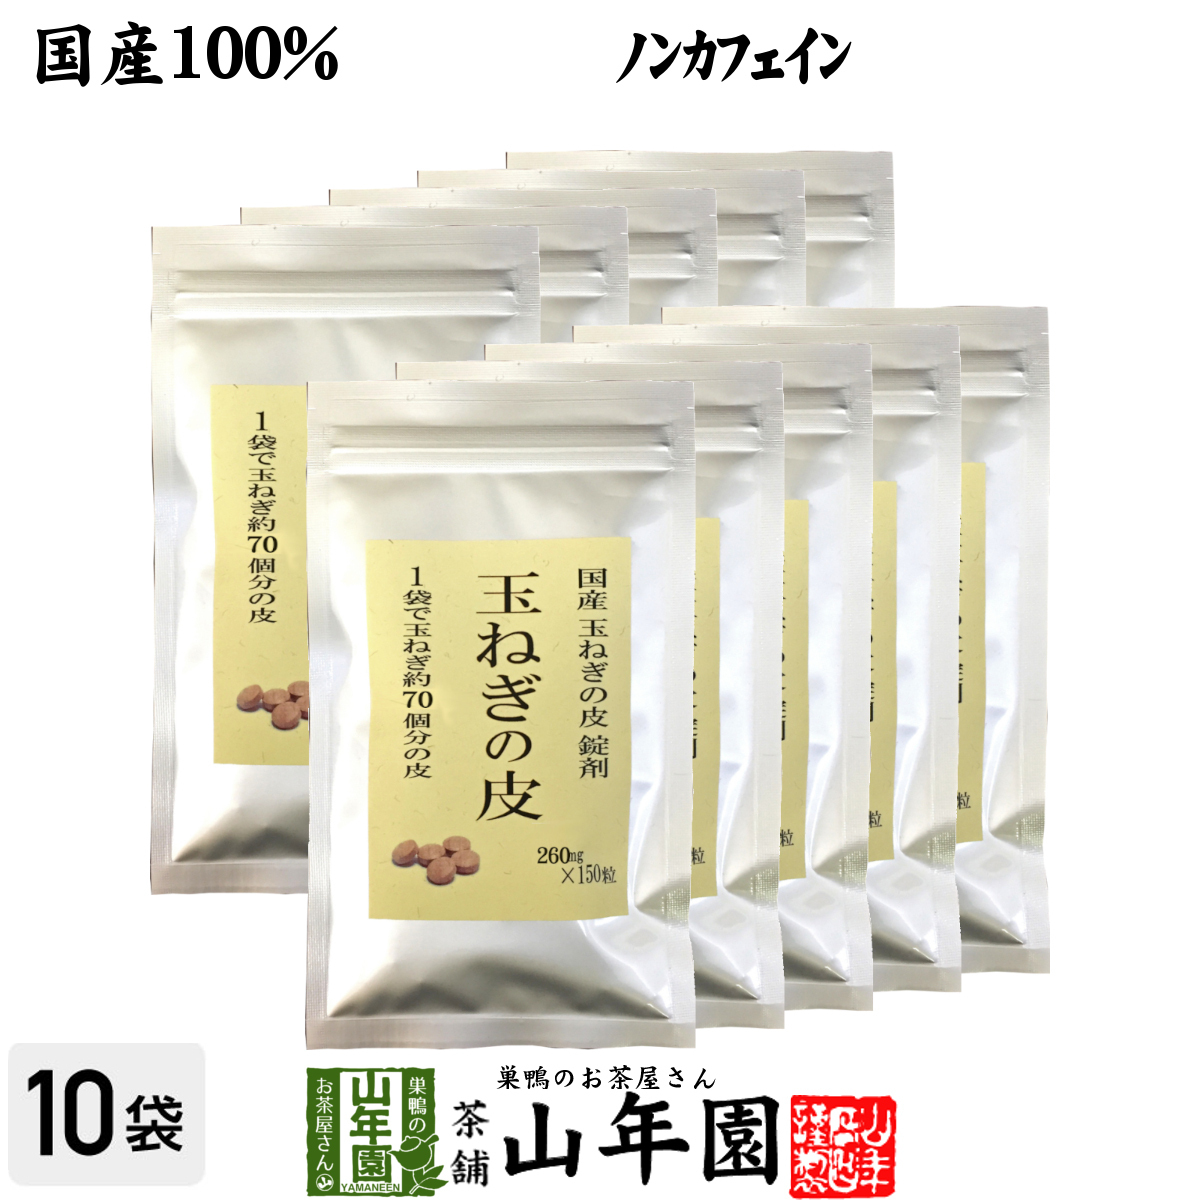 【保存版】 玉ねぎの皮 国産100% 健康茶 サプリメント 送料無料 ノンカフェイン 錠剤タイプ 260mg×150粒×10袋セット その他